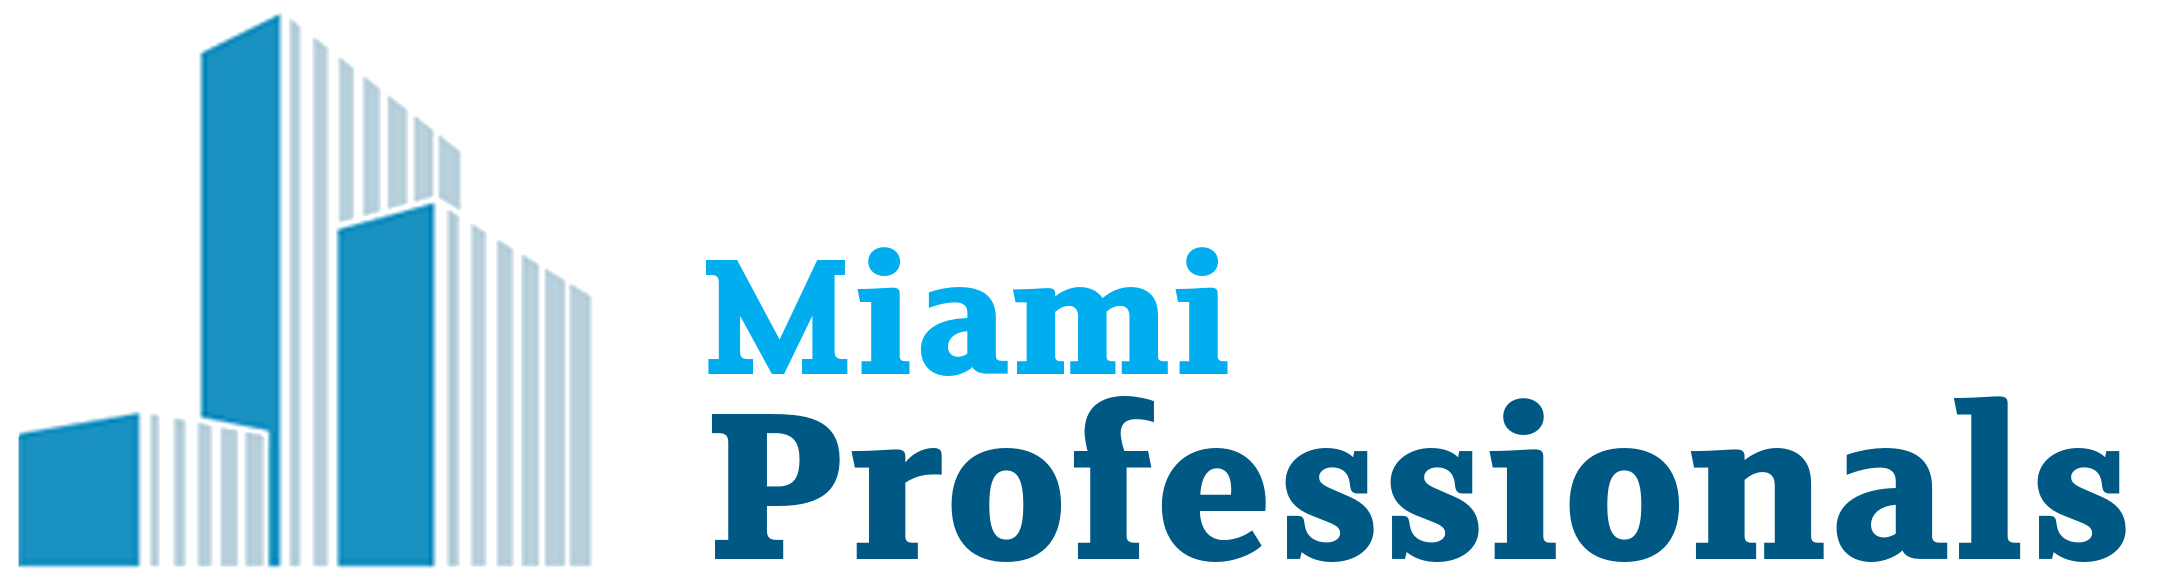 Miami Professionals